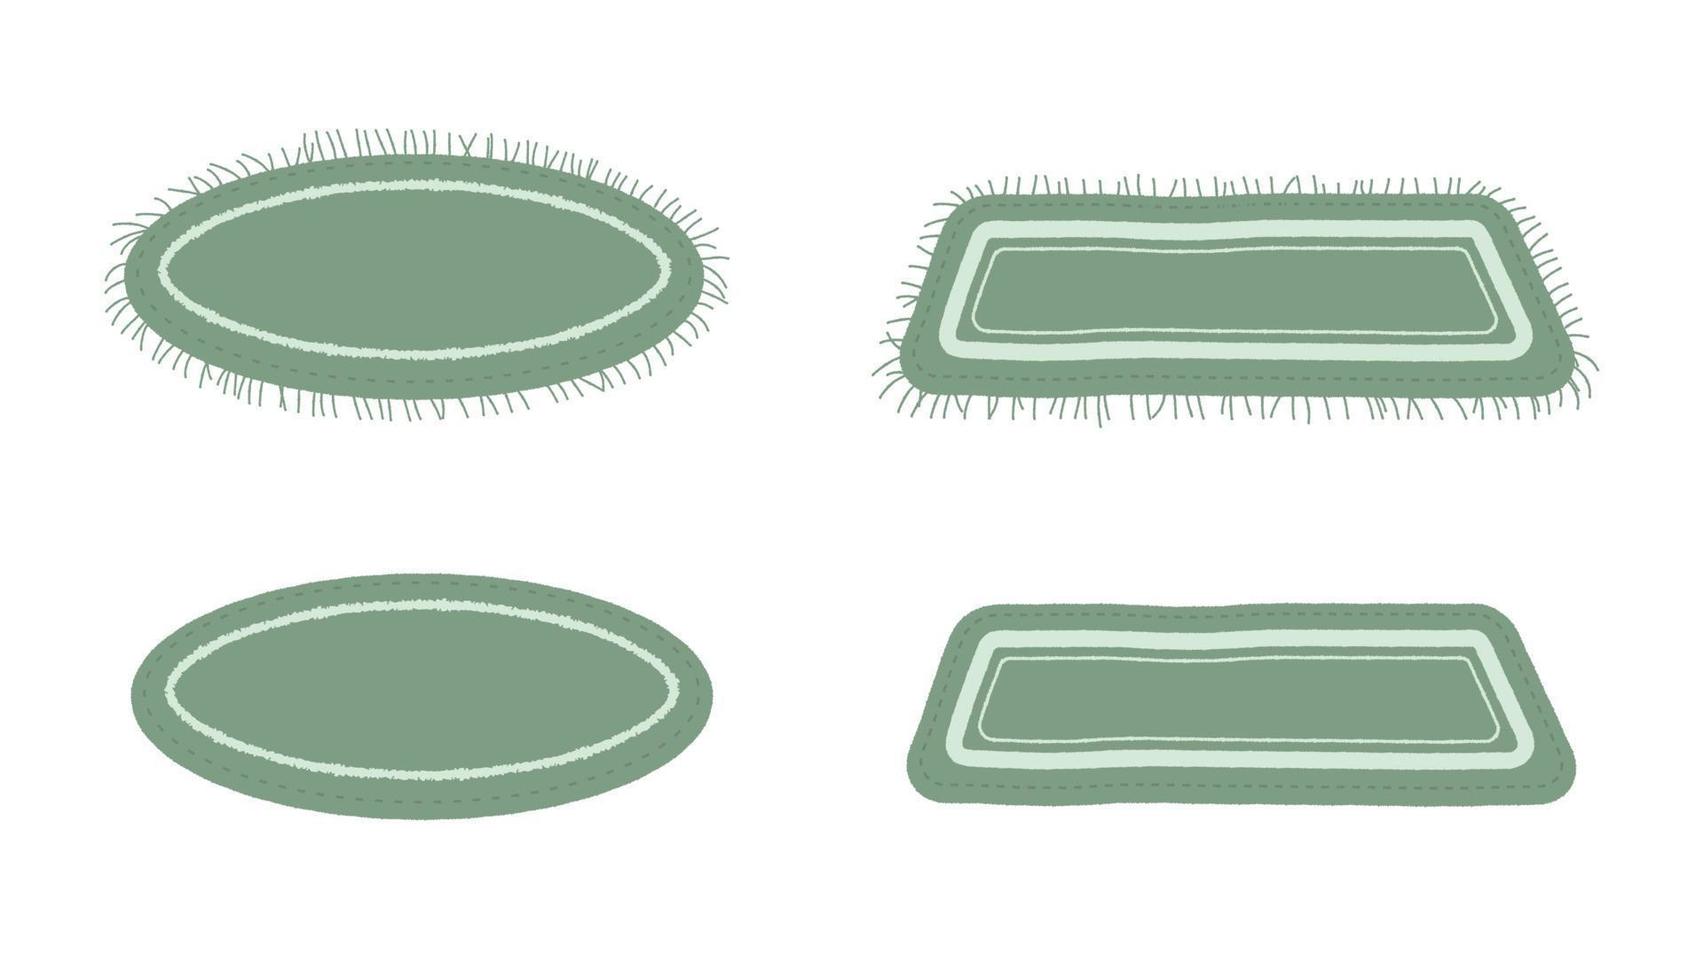 uppsättning av grön mattor för dekor, badrum, toalett, strand illustration. randig, fransad vektor